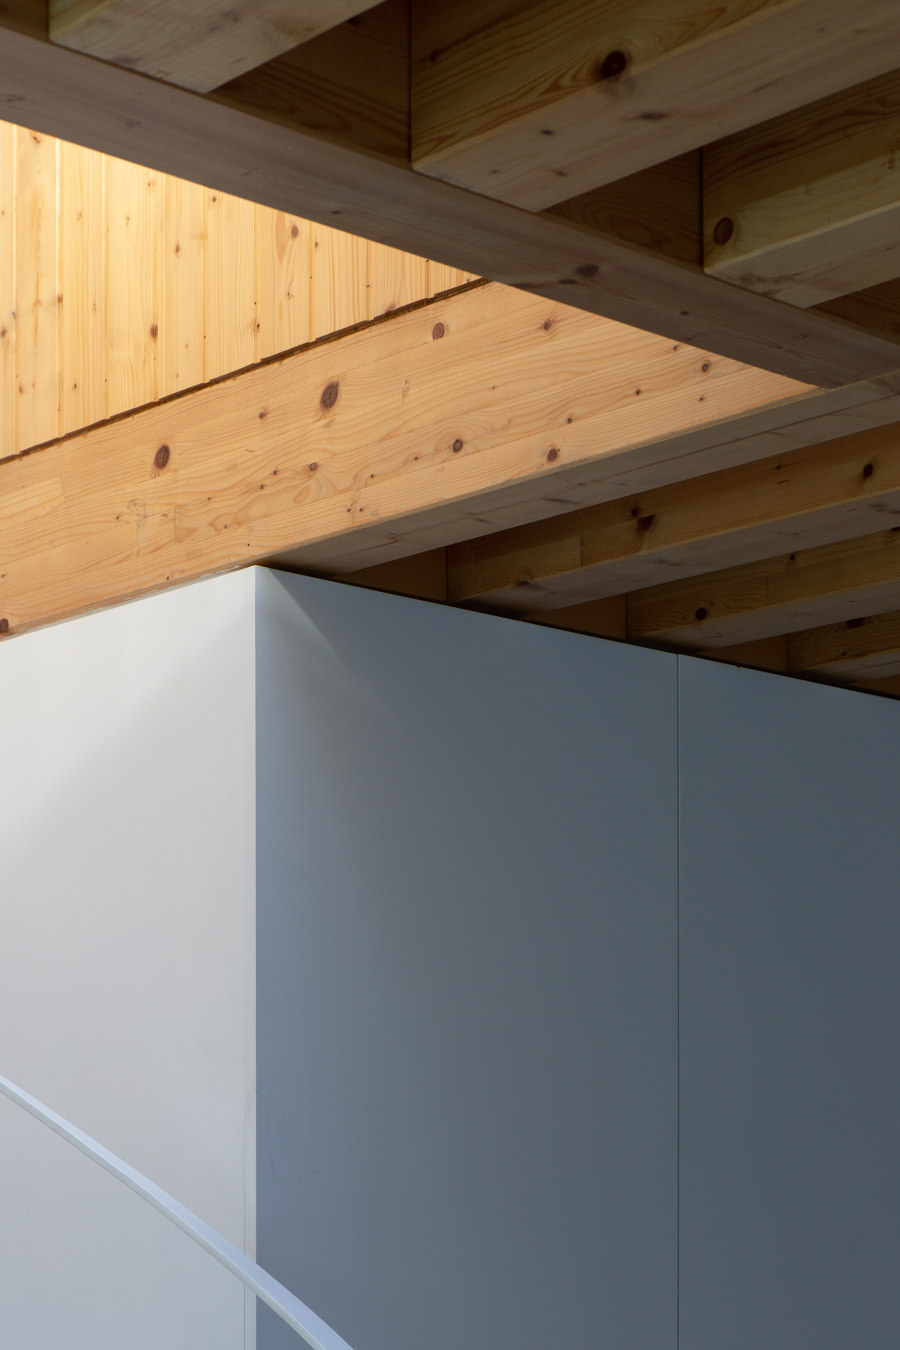 LMF - Loft Miraflor von a*l - Alexandre Loureiro Architecture Studio | Wohnräume